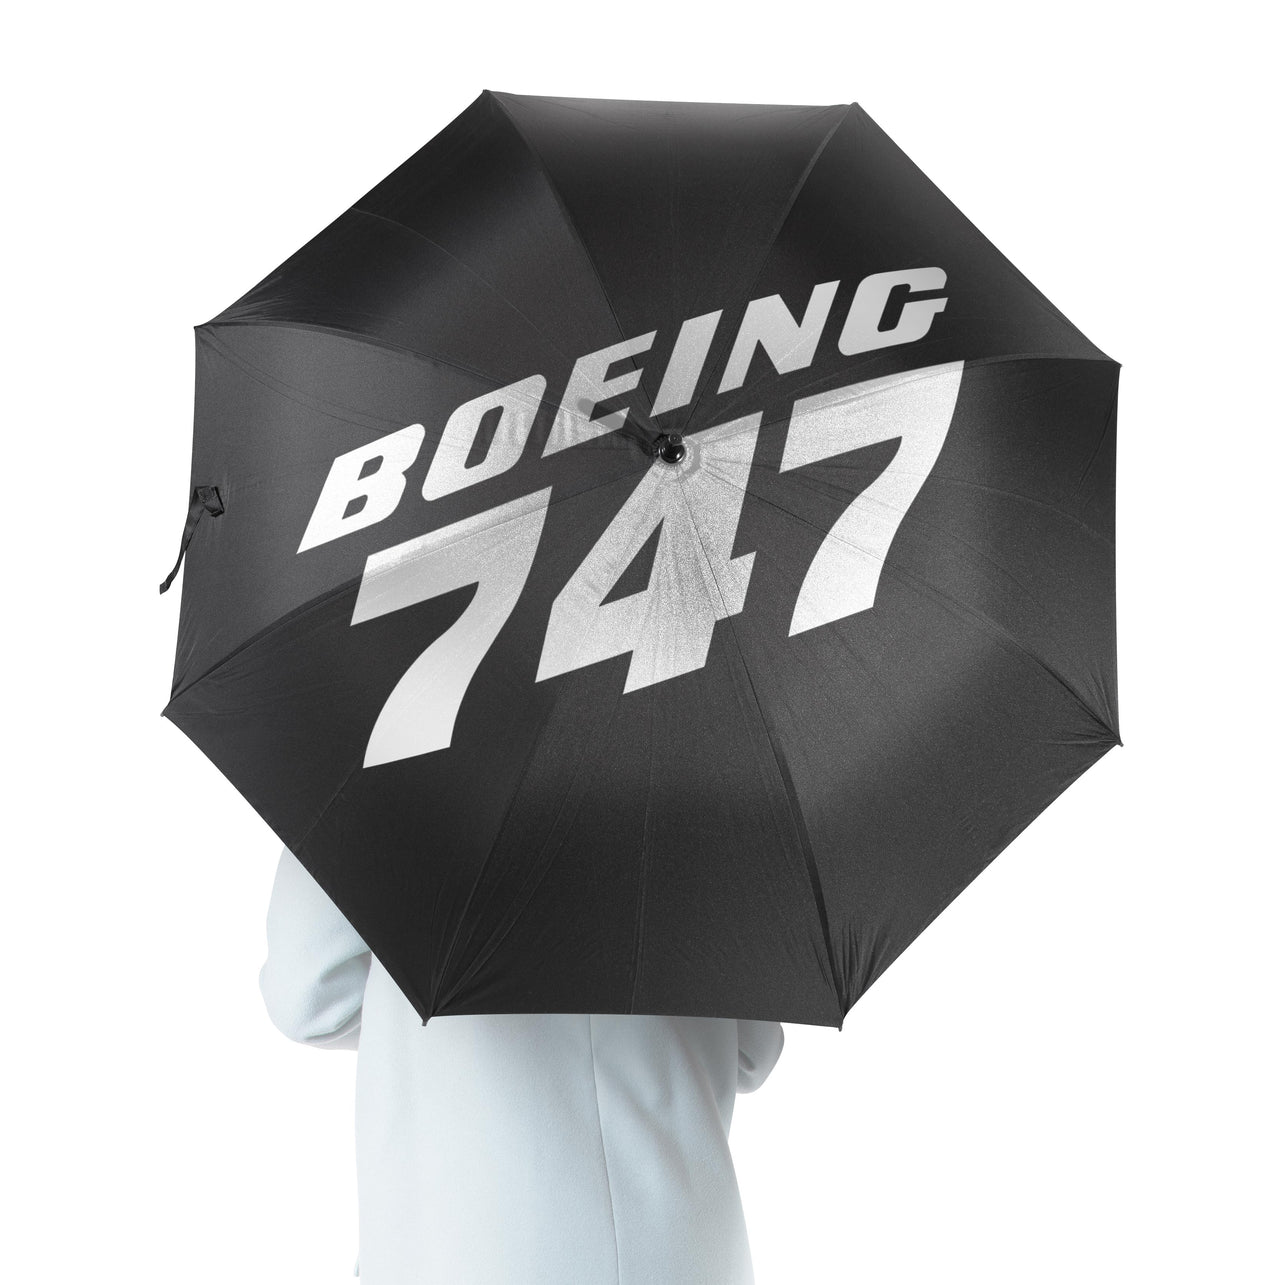 Boeing 747 & Text Designed Umbrella